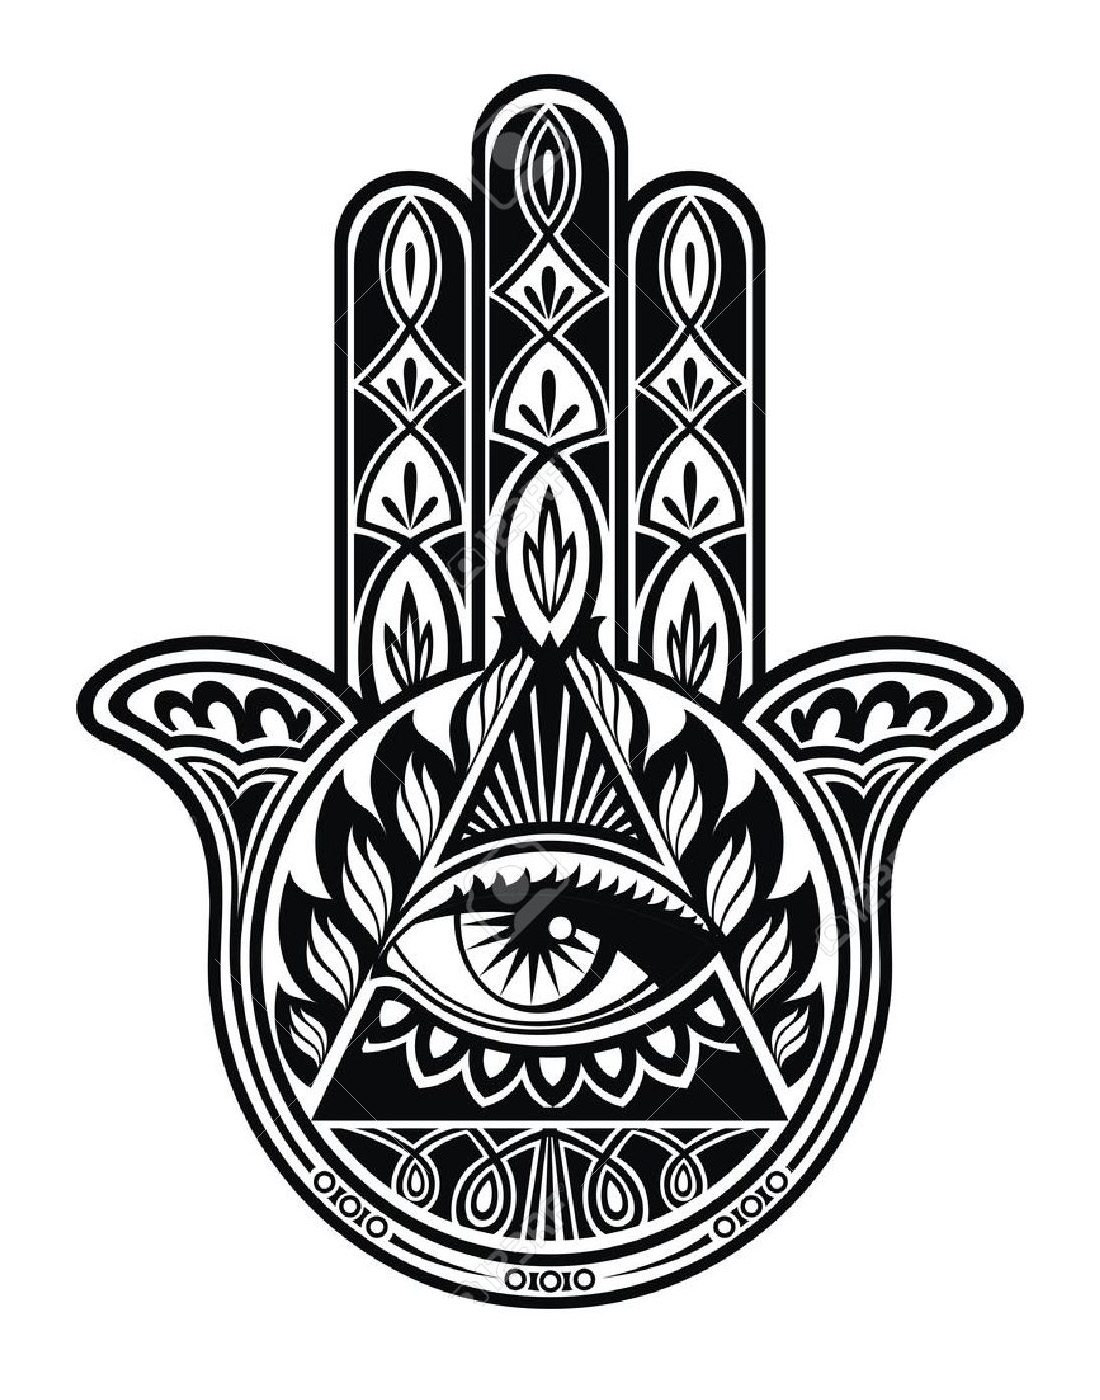 kyrie illuminati logo